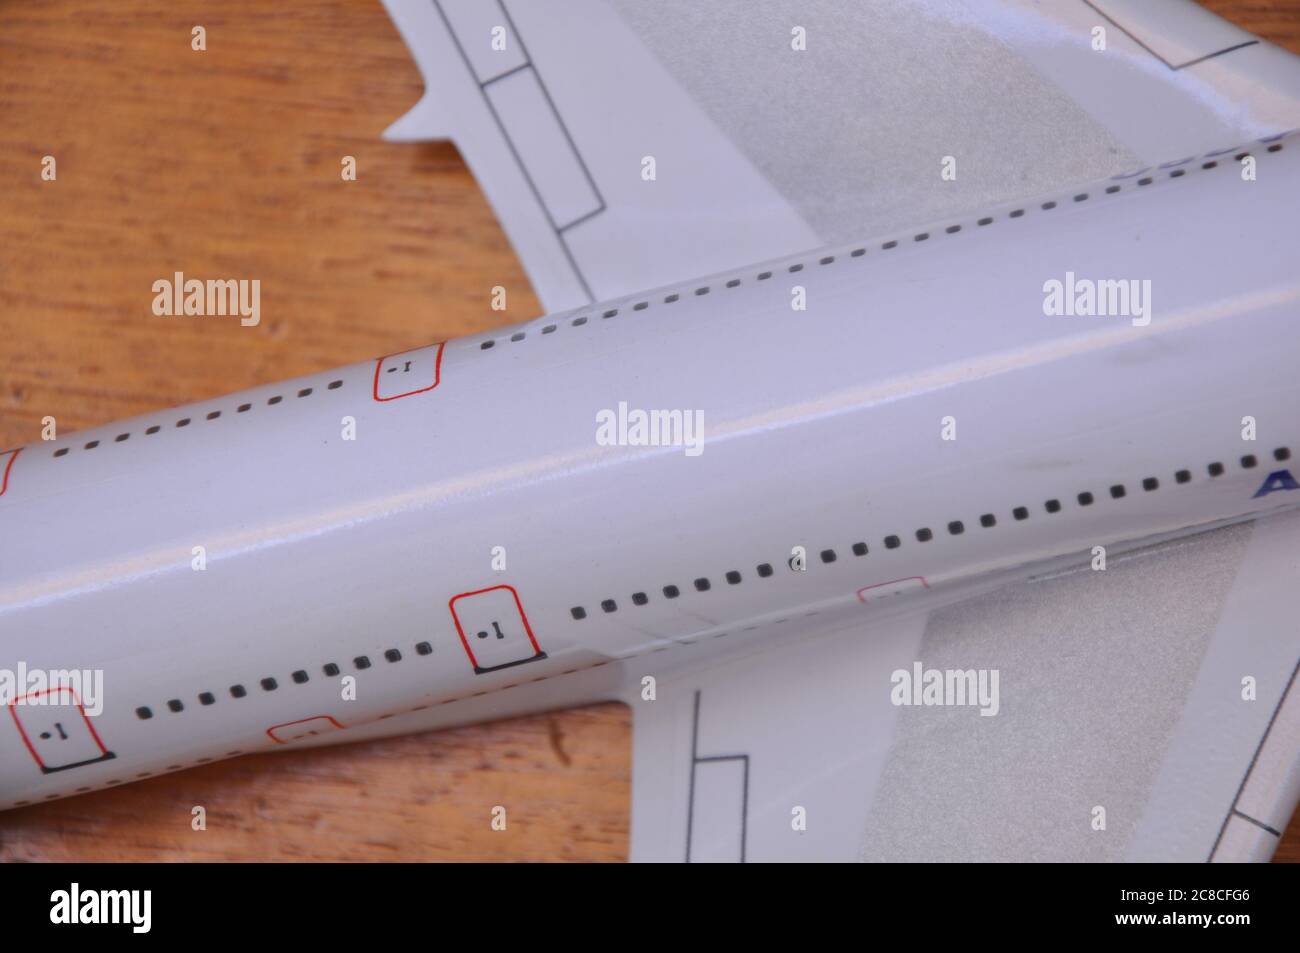 Fusoliera di un aereo, jet, con parti di ali, finestre, sponda posteriore e bordo posteriore, fotografata dall'alto, con taglio intenzionale, Foto Stock